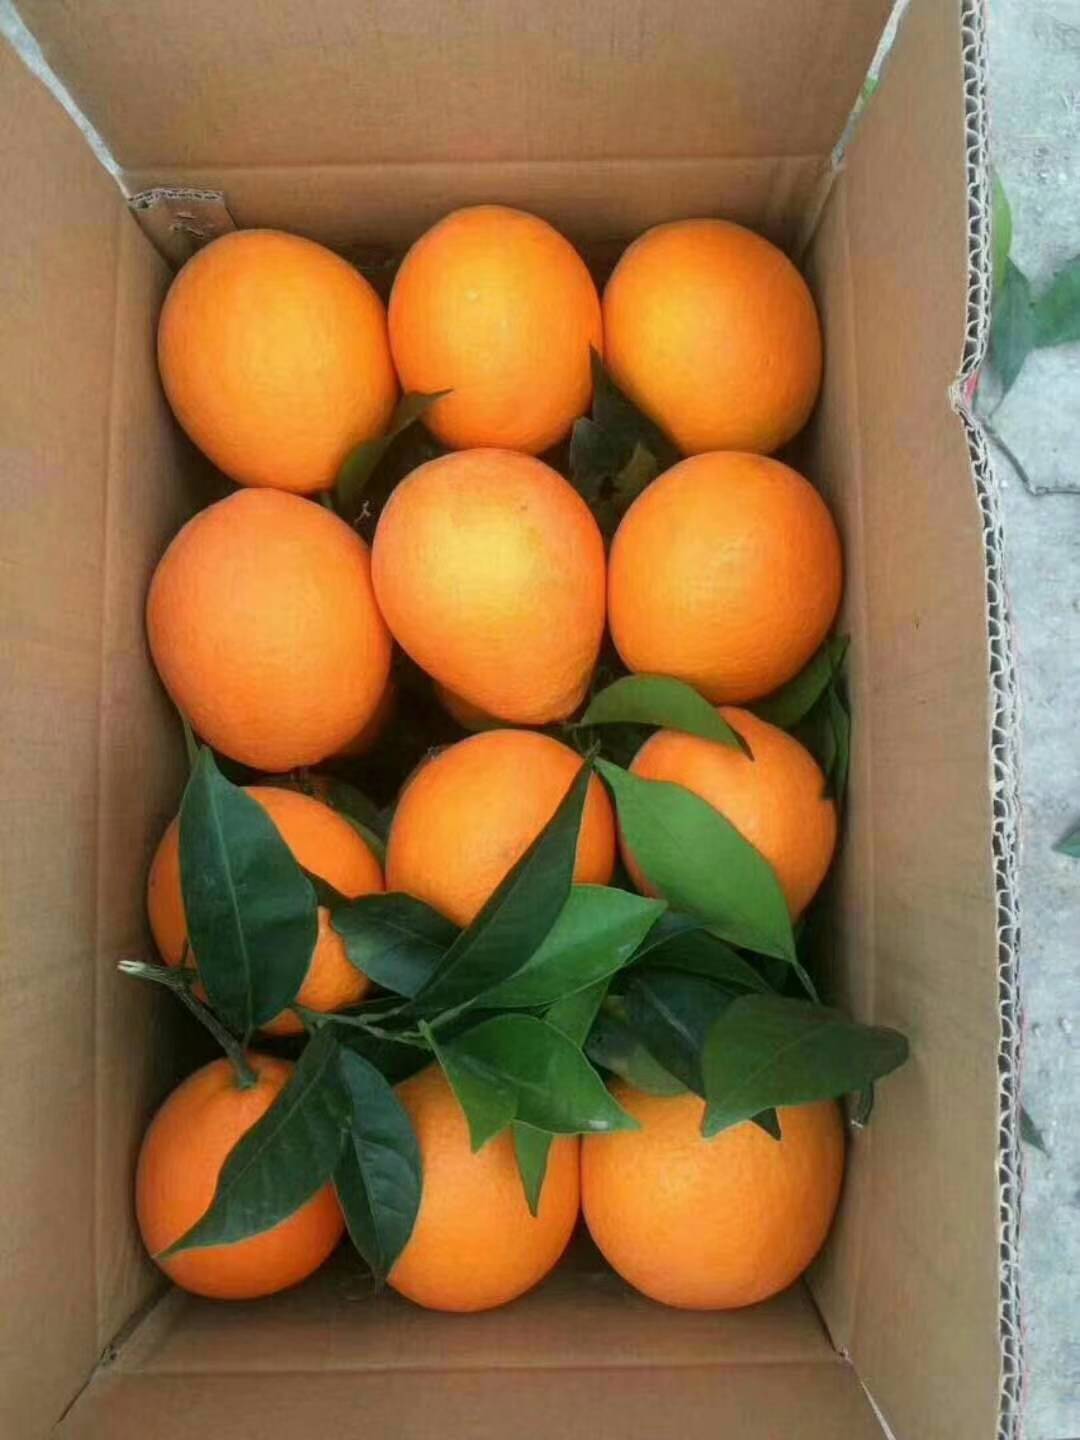 17764818489奉节脐橙，自己家种的，无公害，酸甜适宜，美味可口，放心食用。欢迎各位老板前来收购。